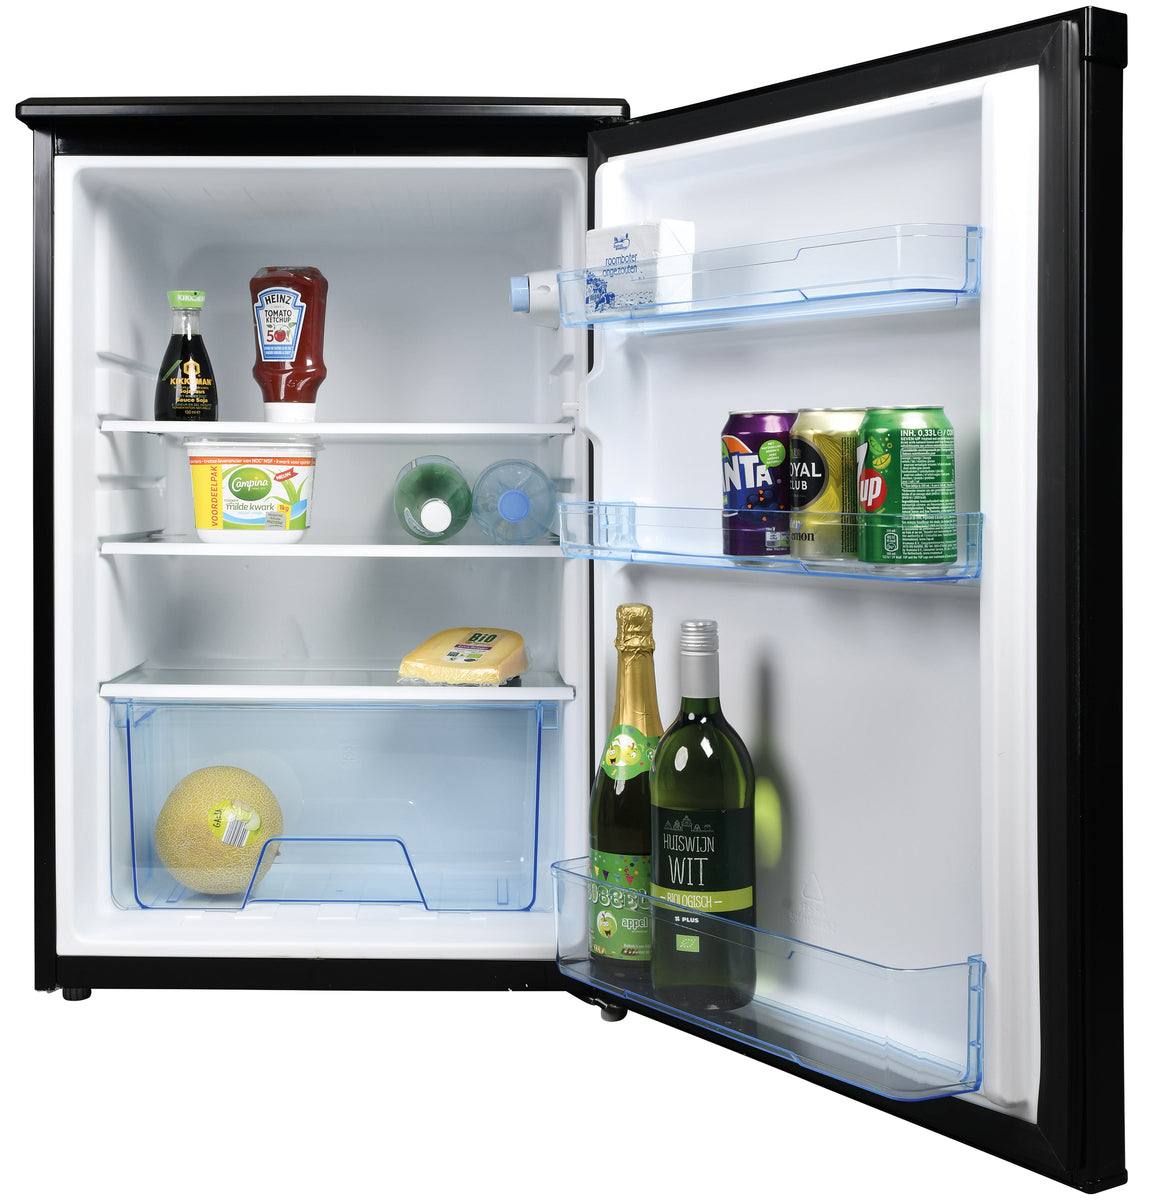 Salora CLT1330BL koelkast tafelmodel, 55 cm breed